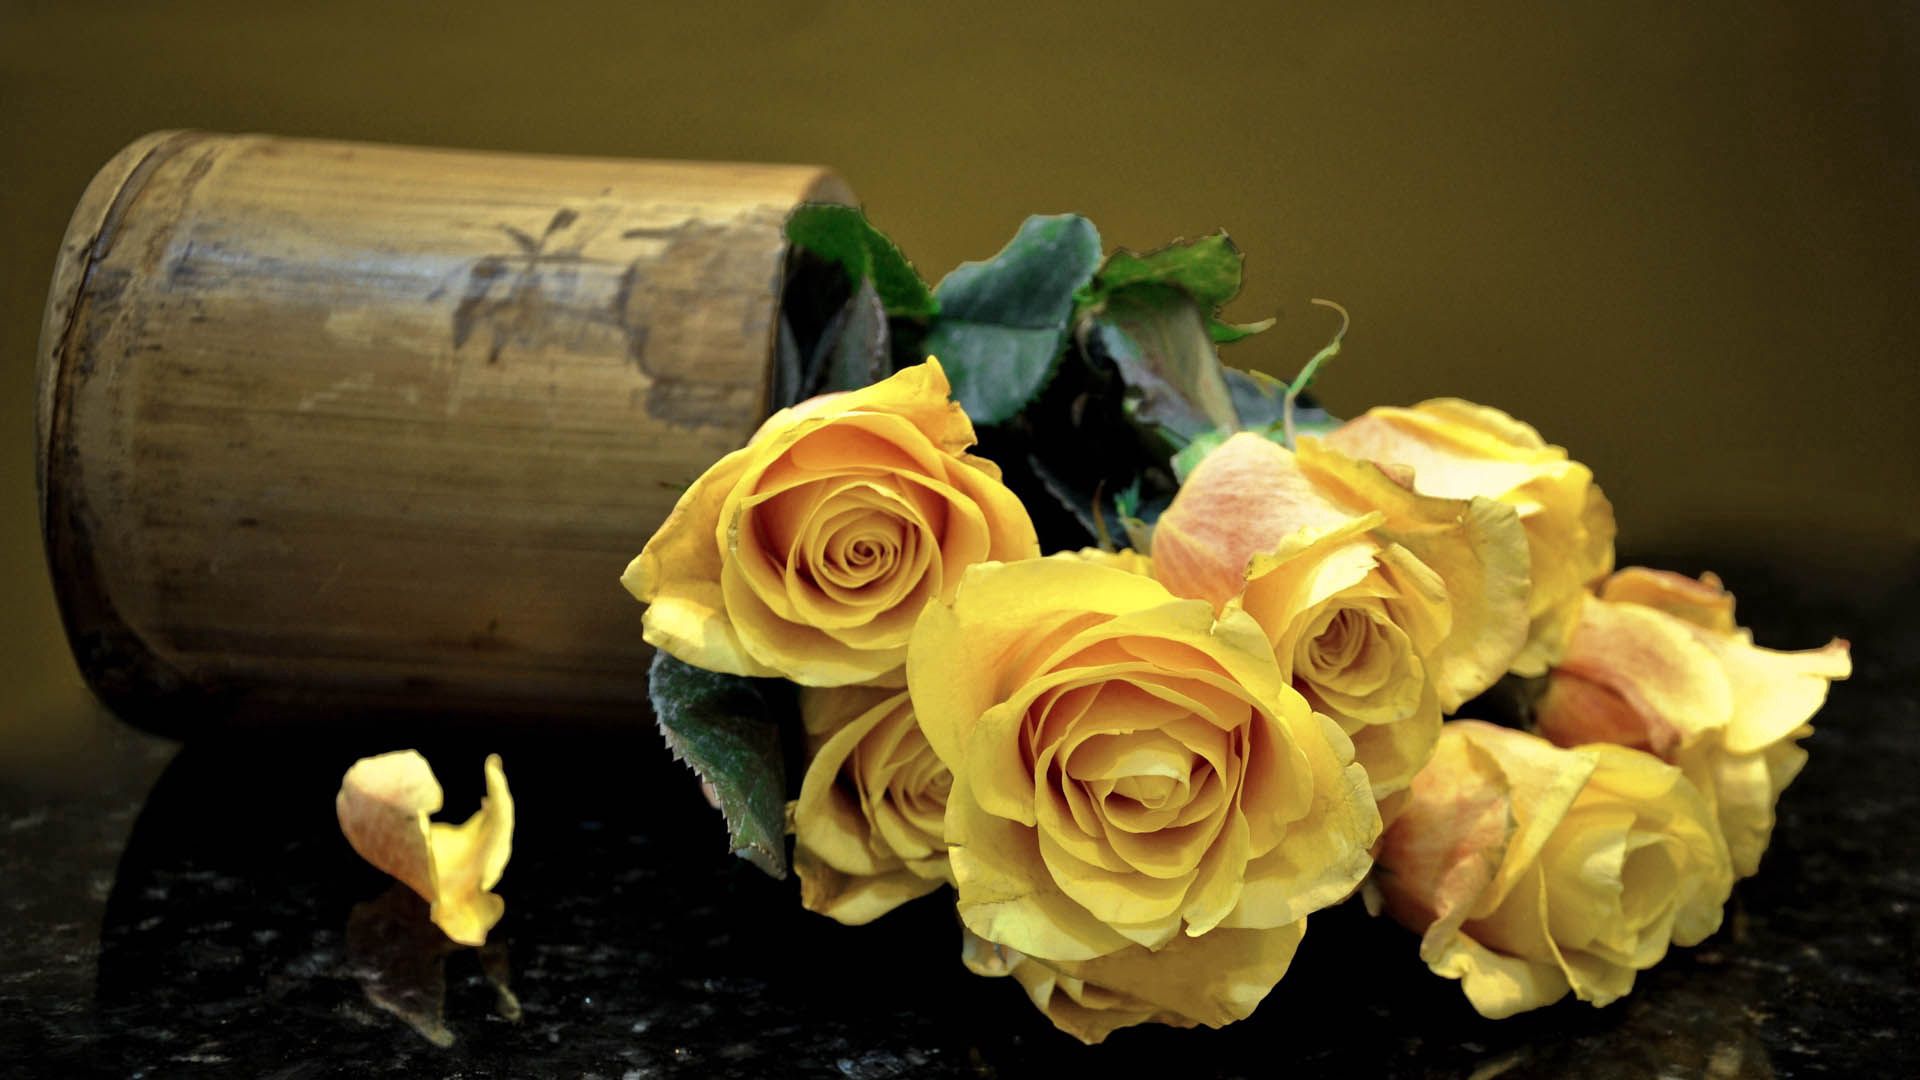 bouquet, flowers, roses Image for desktop